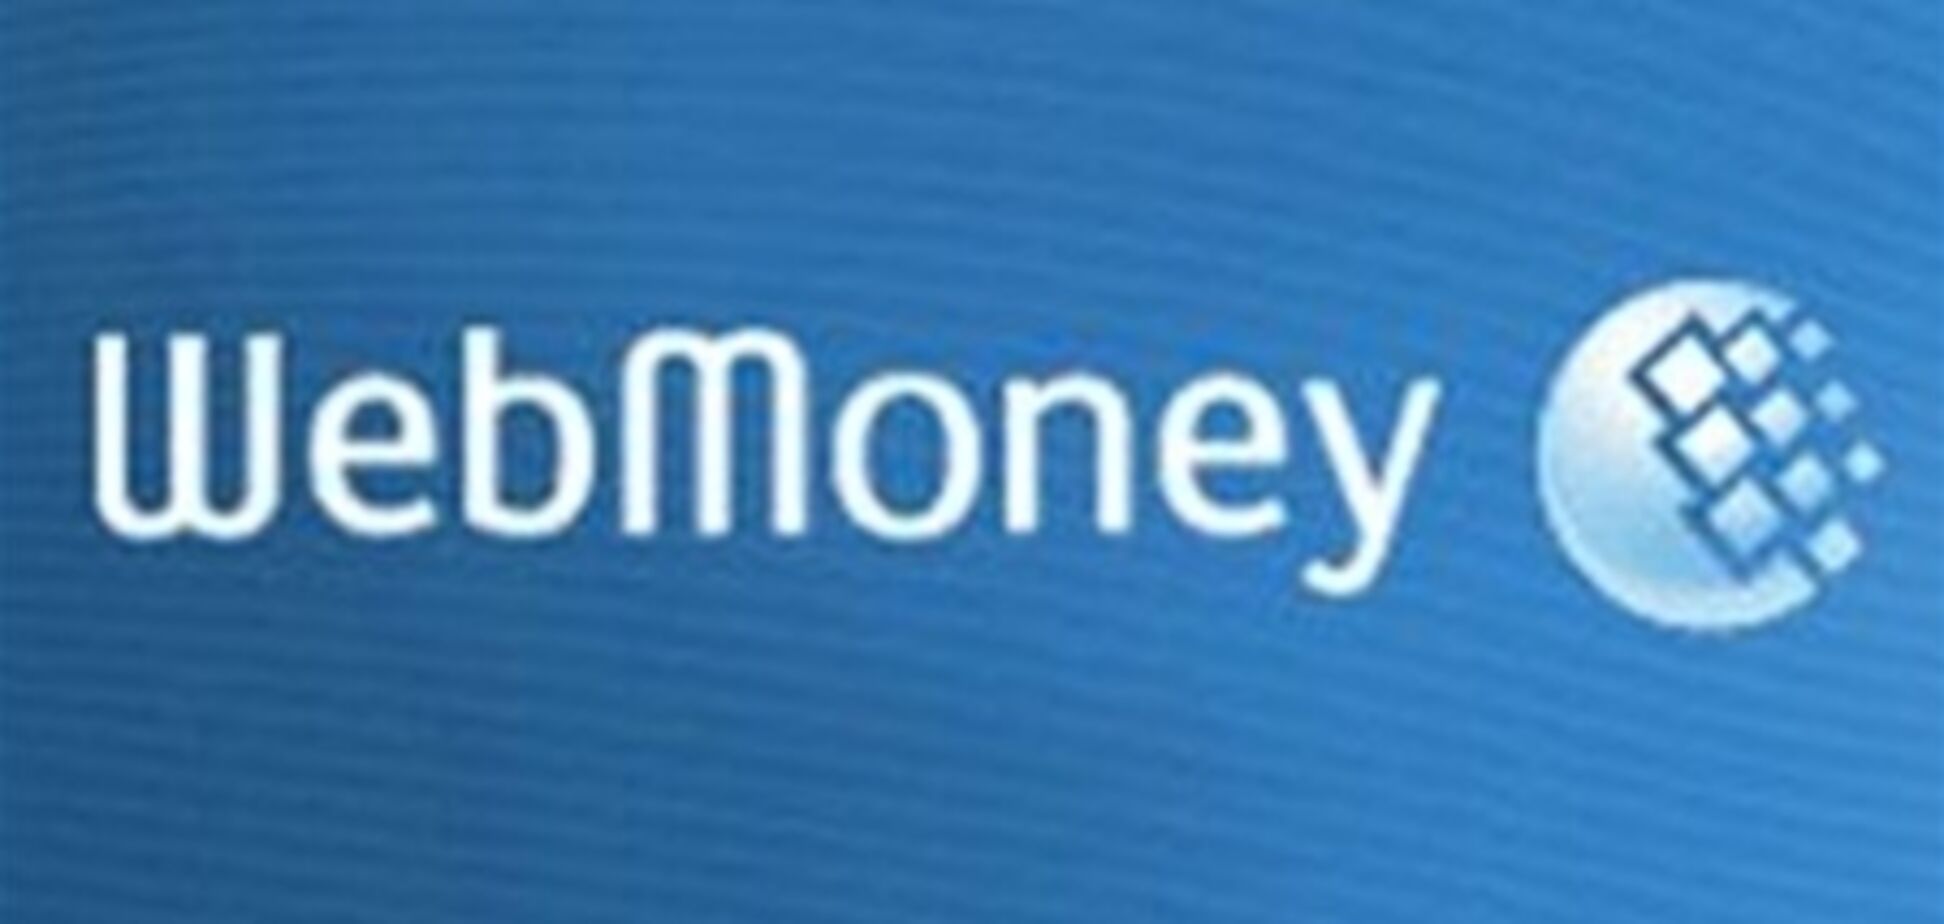 WebMoney Transfer оплачивало небольшие налоги - Миндоходов